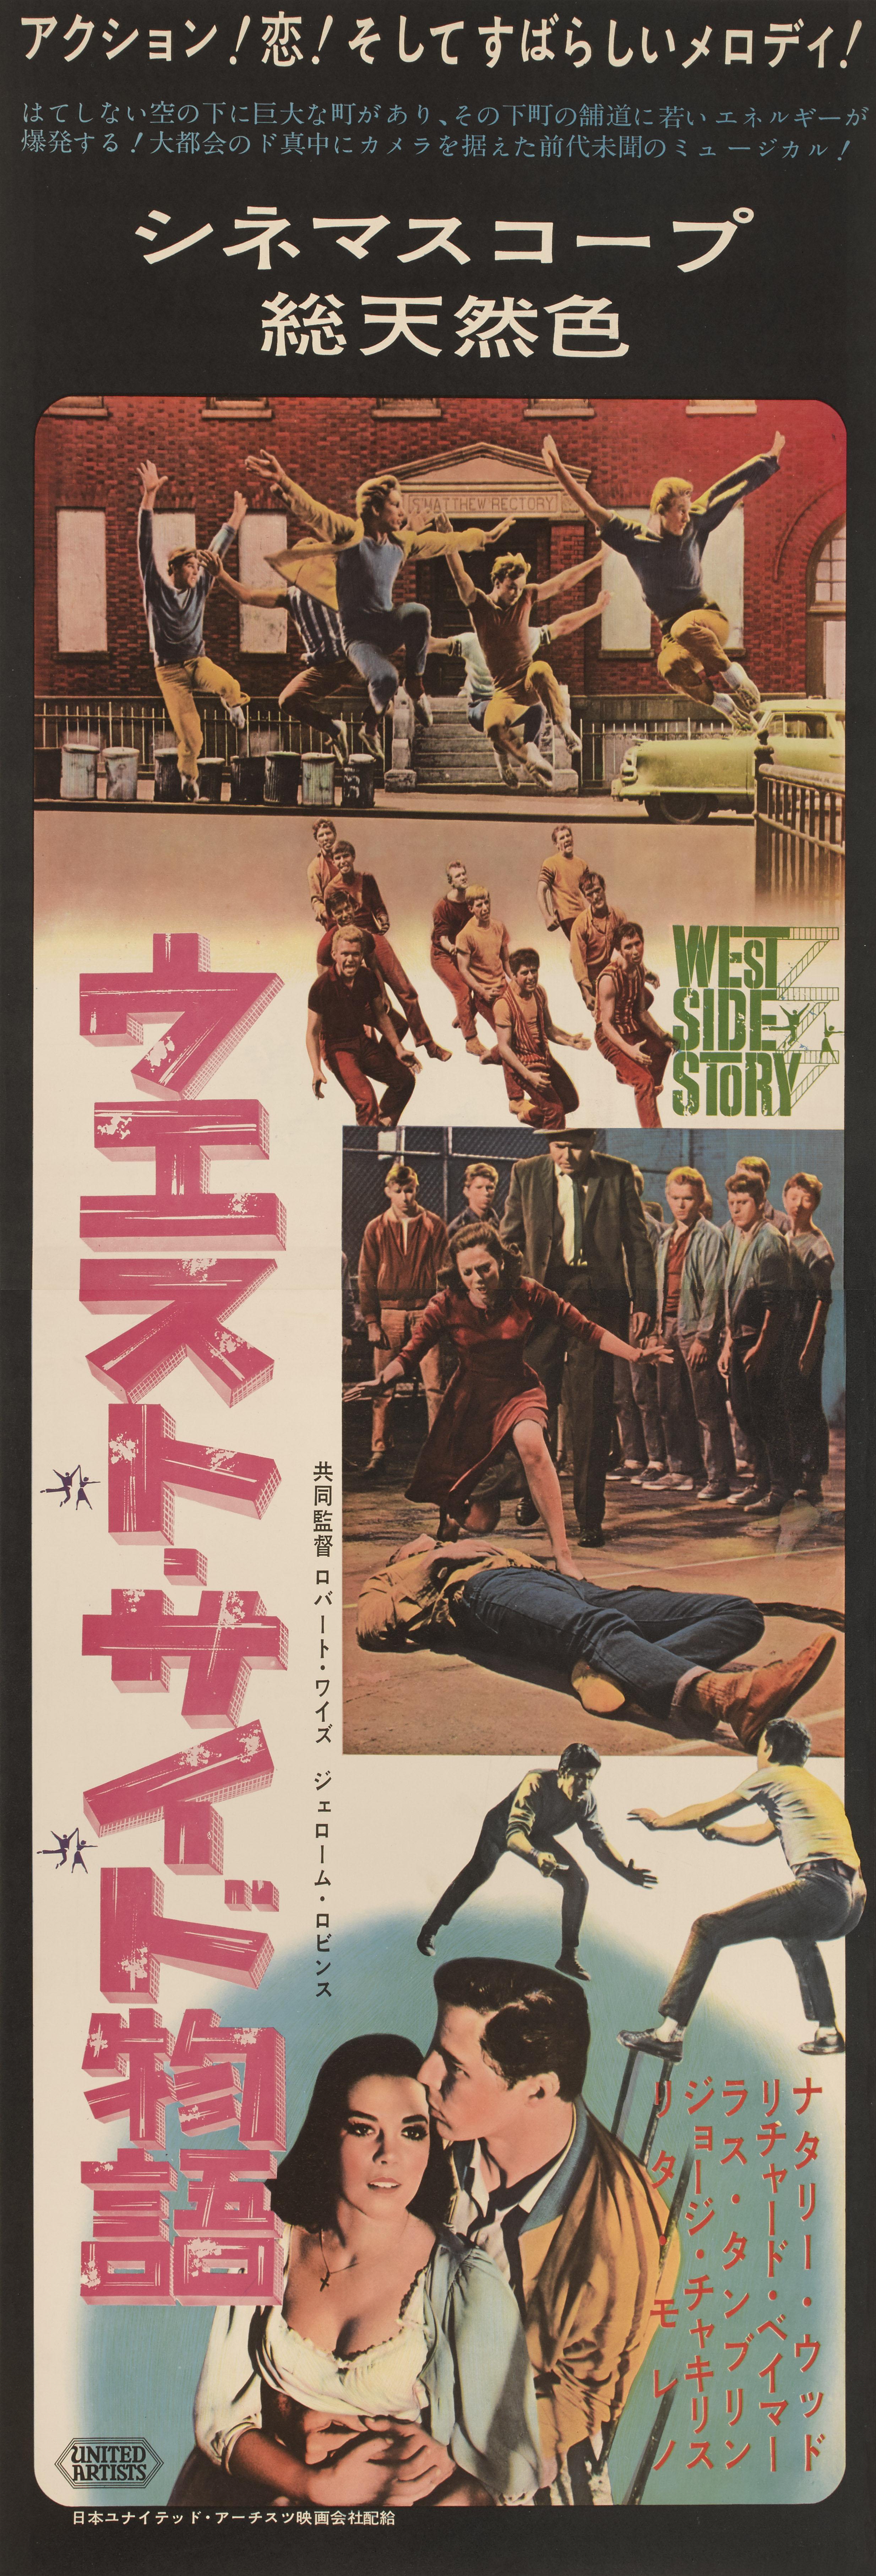 Originales japanisches Filmplakat für West Side Story 1961.
Der Film wurde unter der Regie von Jerome Robbins und Rober Wise gedreht und mit Natalie Wood, Richar Beymer und George Chakiris besetzt. Die Grafik auf diesem Poster ist einzigartig für